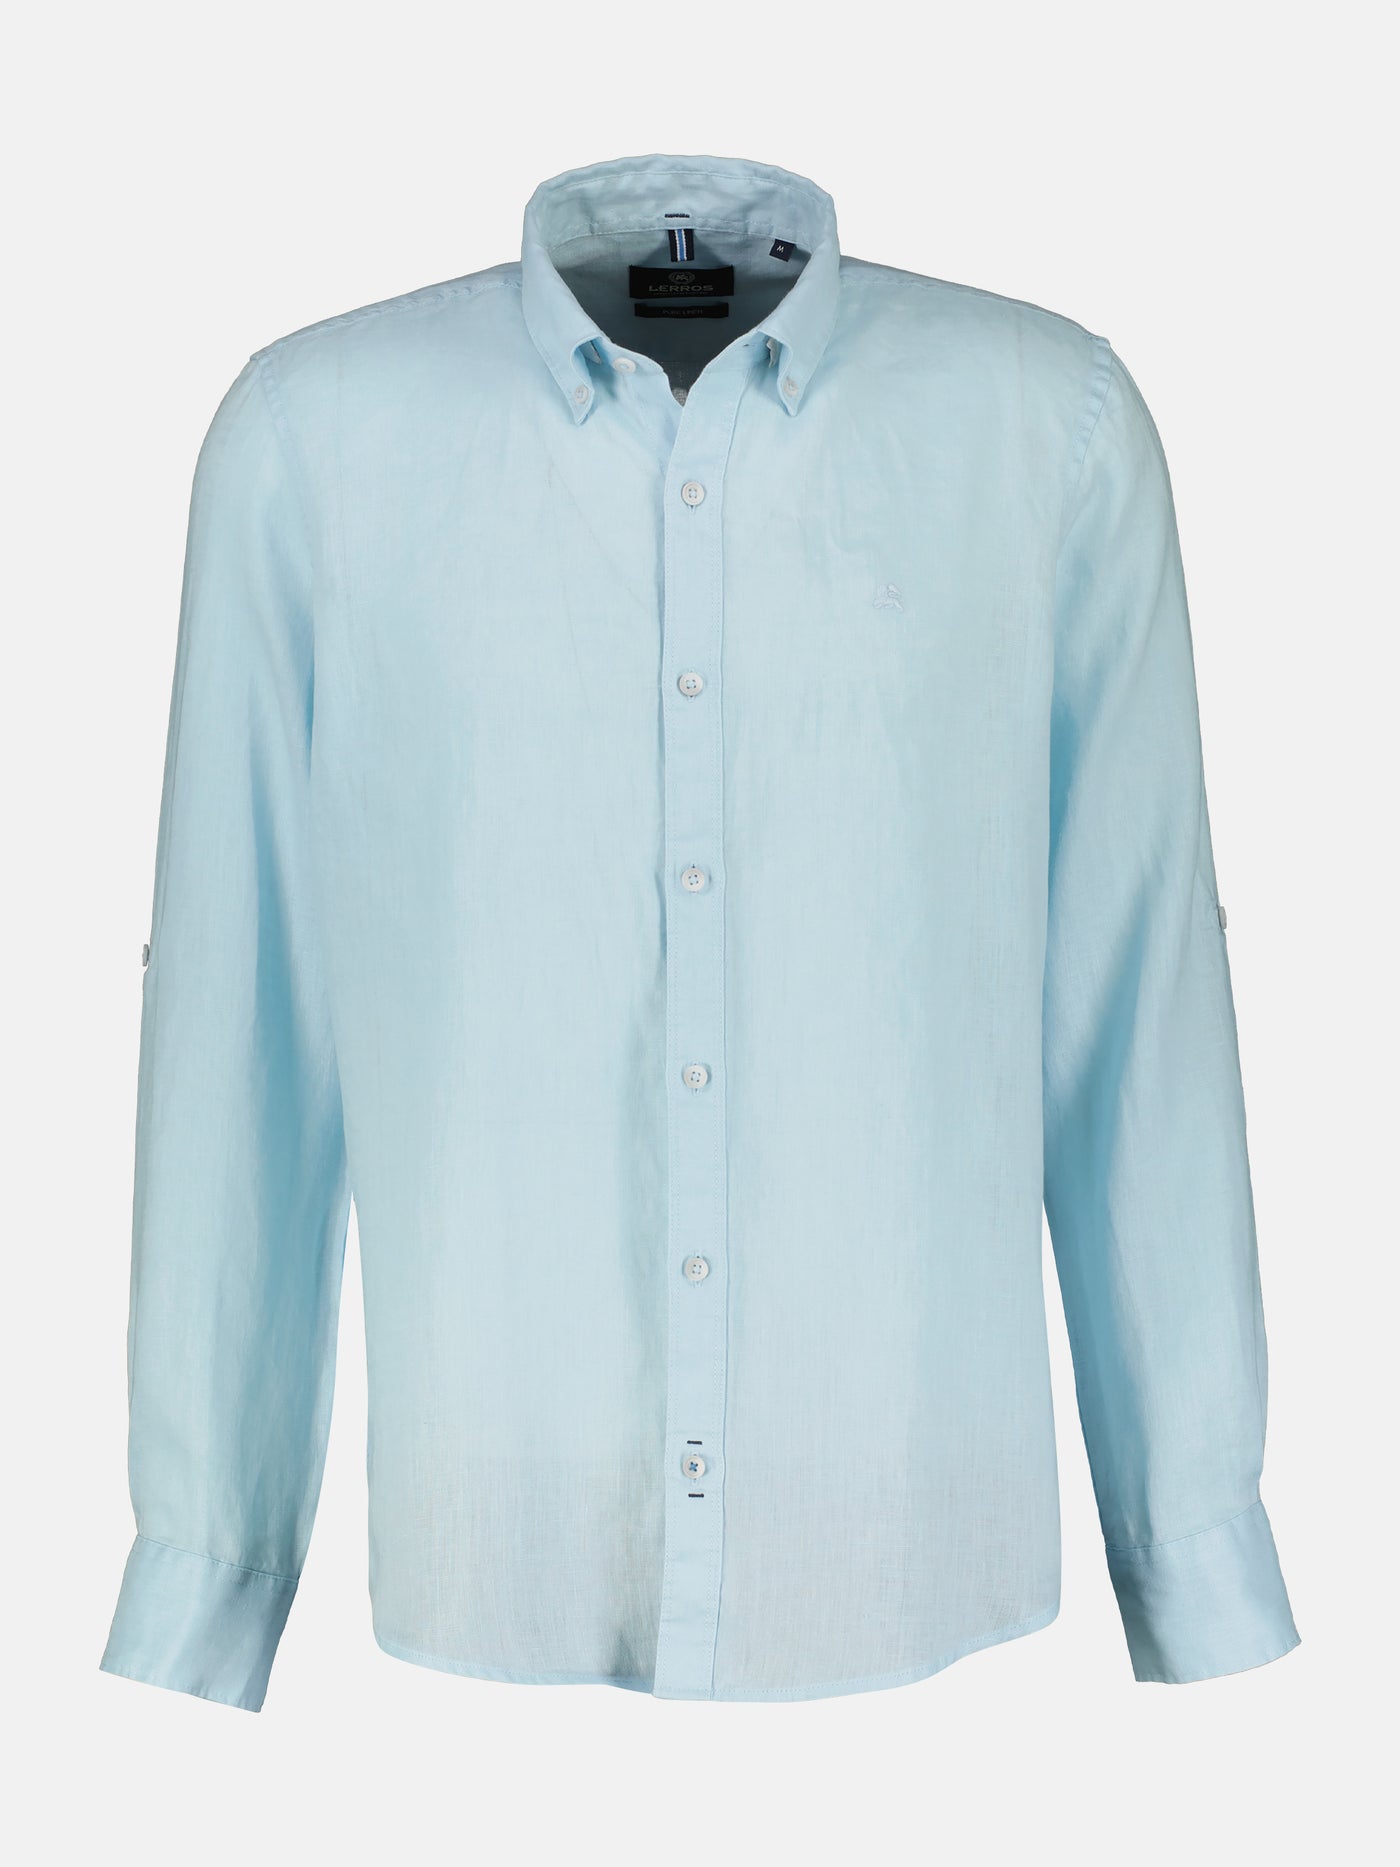 Men's casual linen shirt, long sleeves